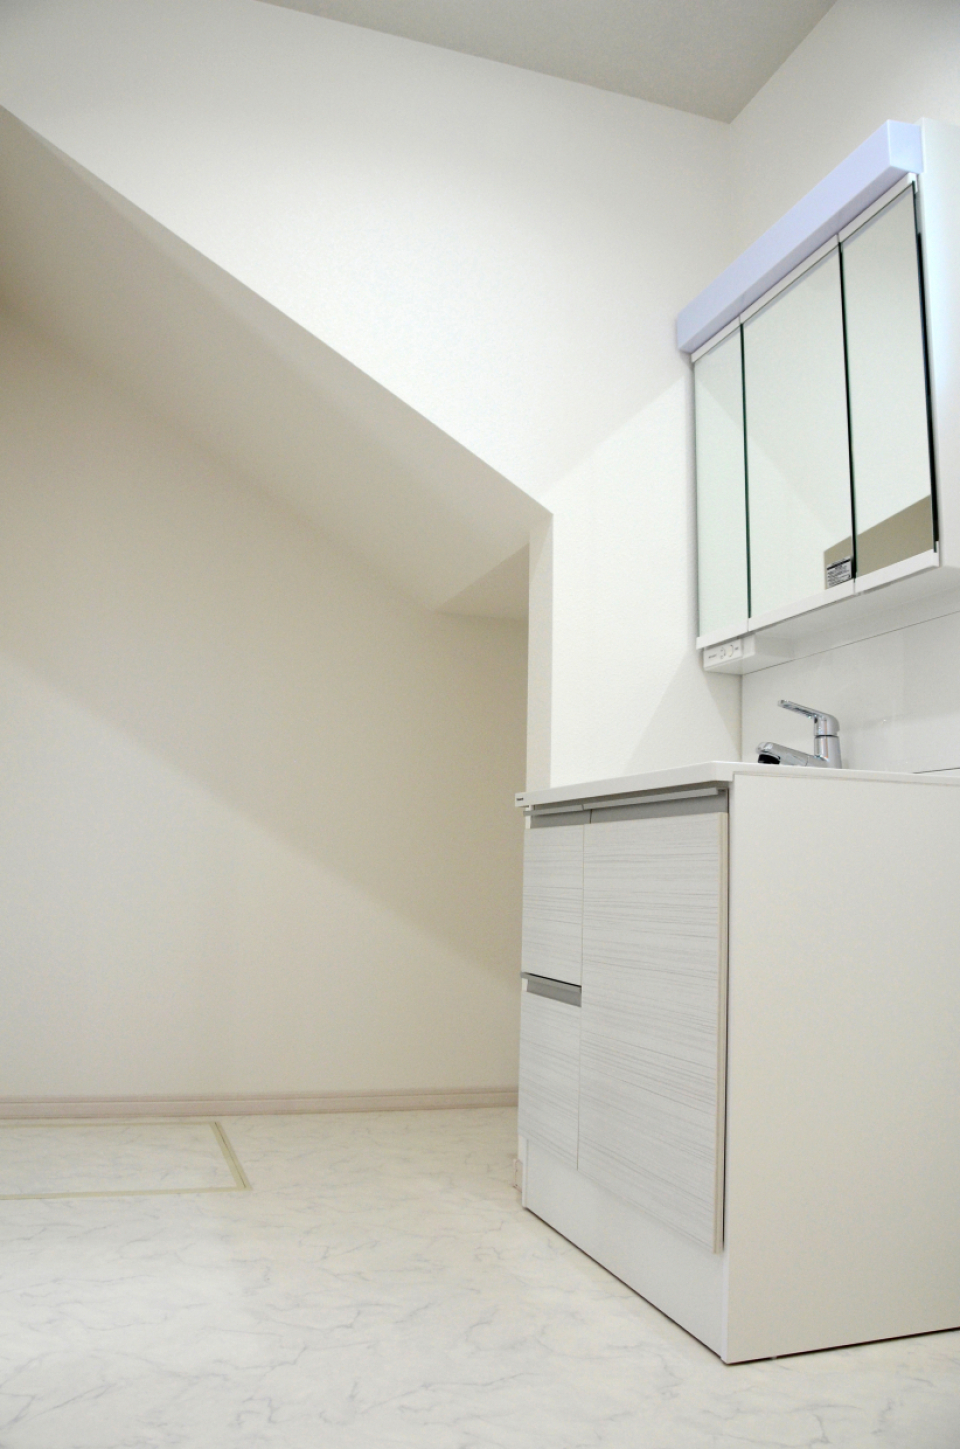 洗面スペースの横は階段下のスペースを活用した空間となっており、収納スペースとして活用できる。